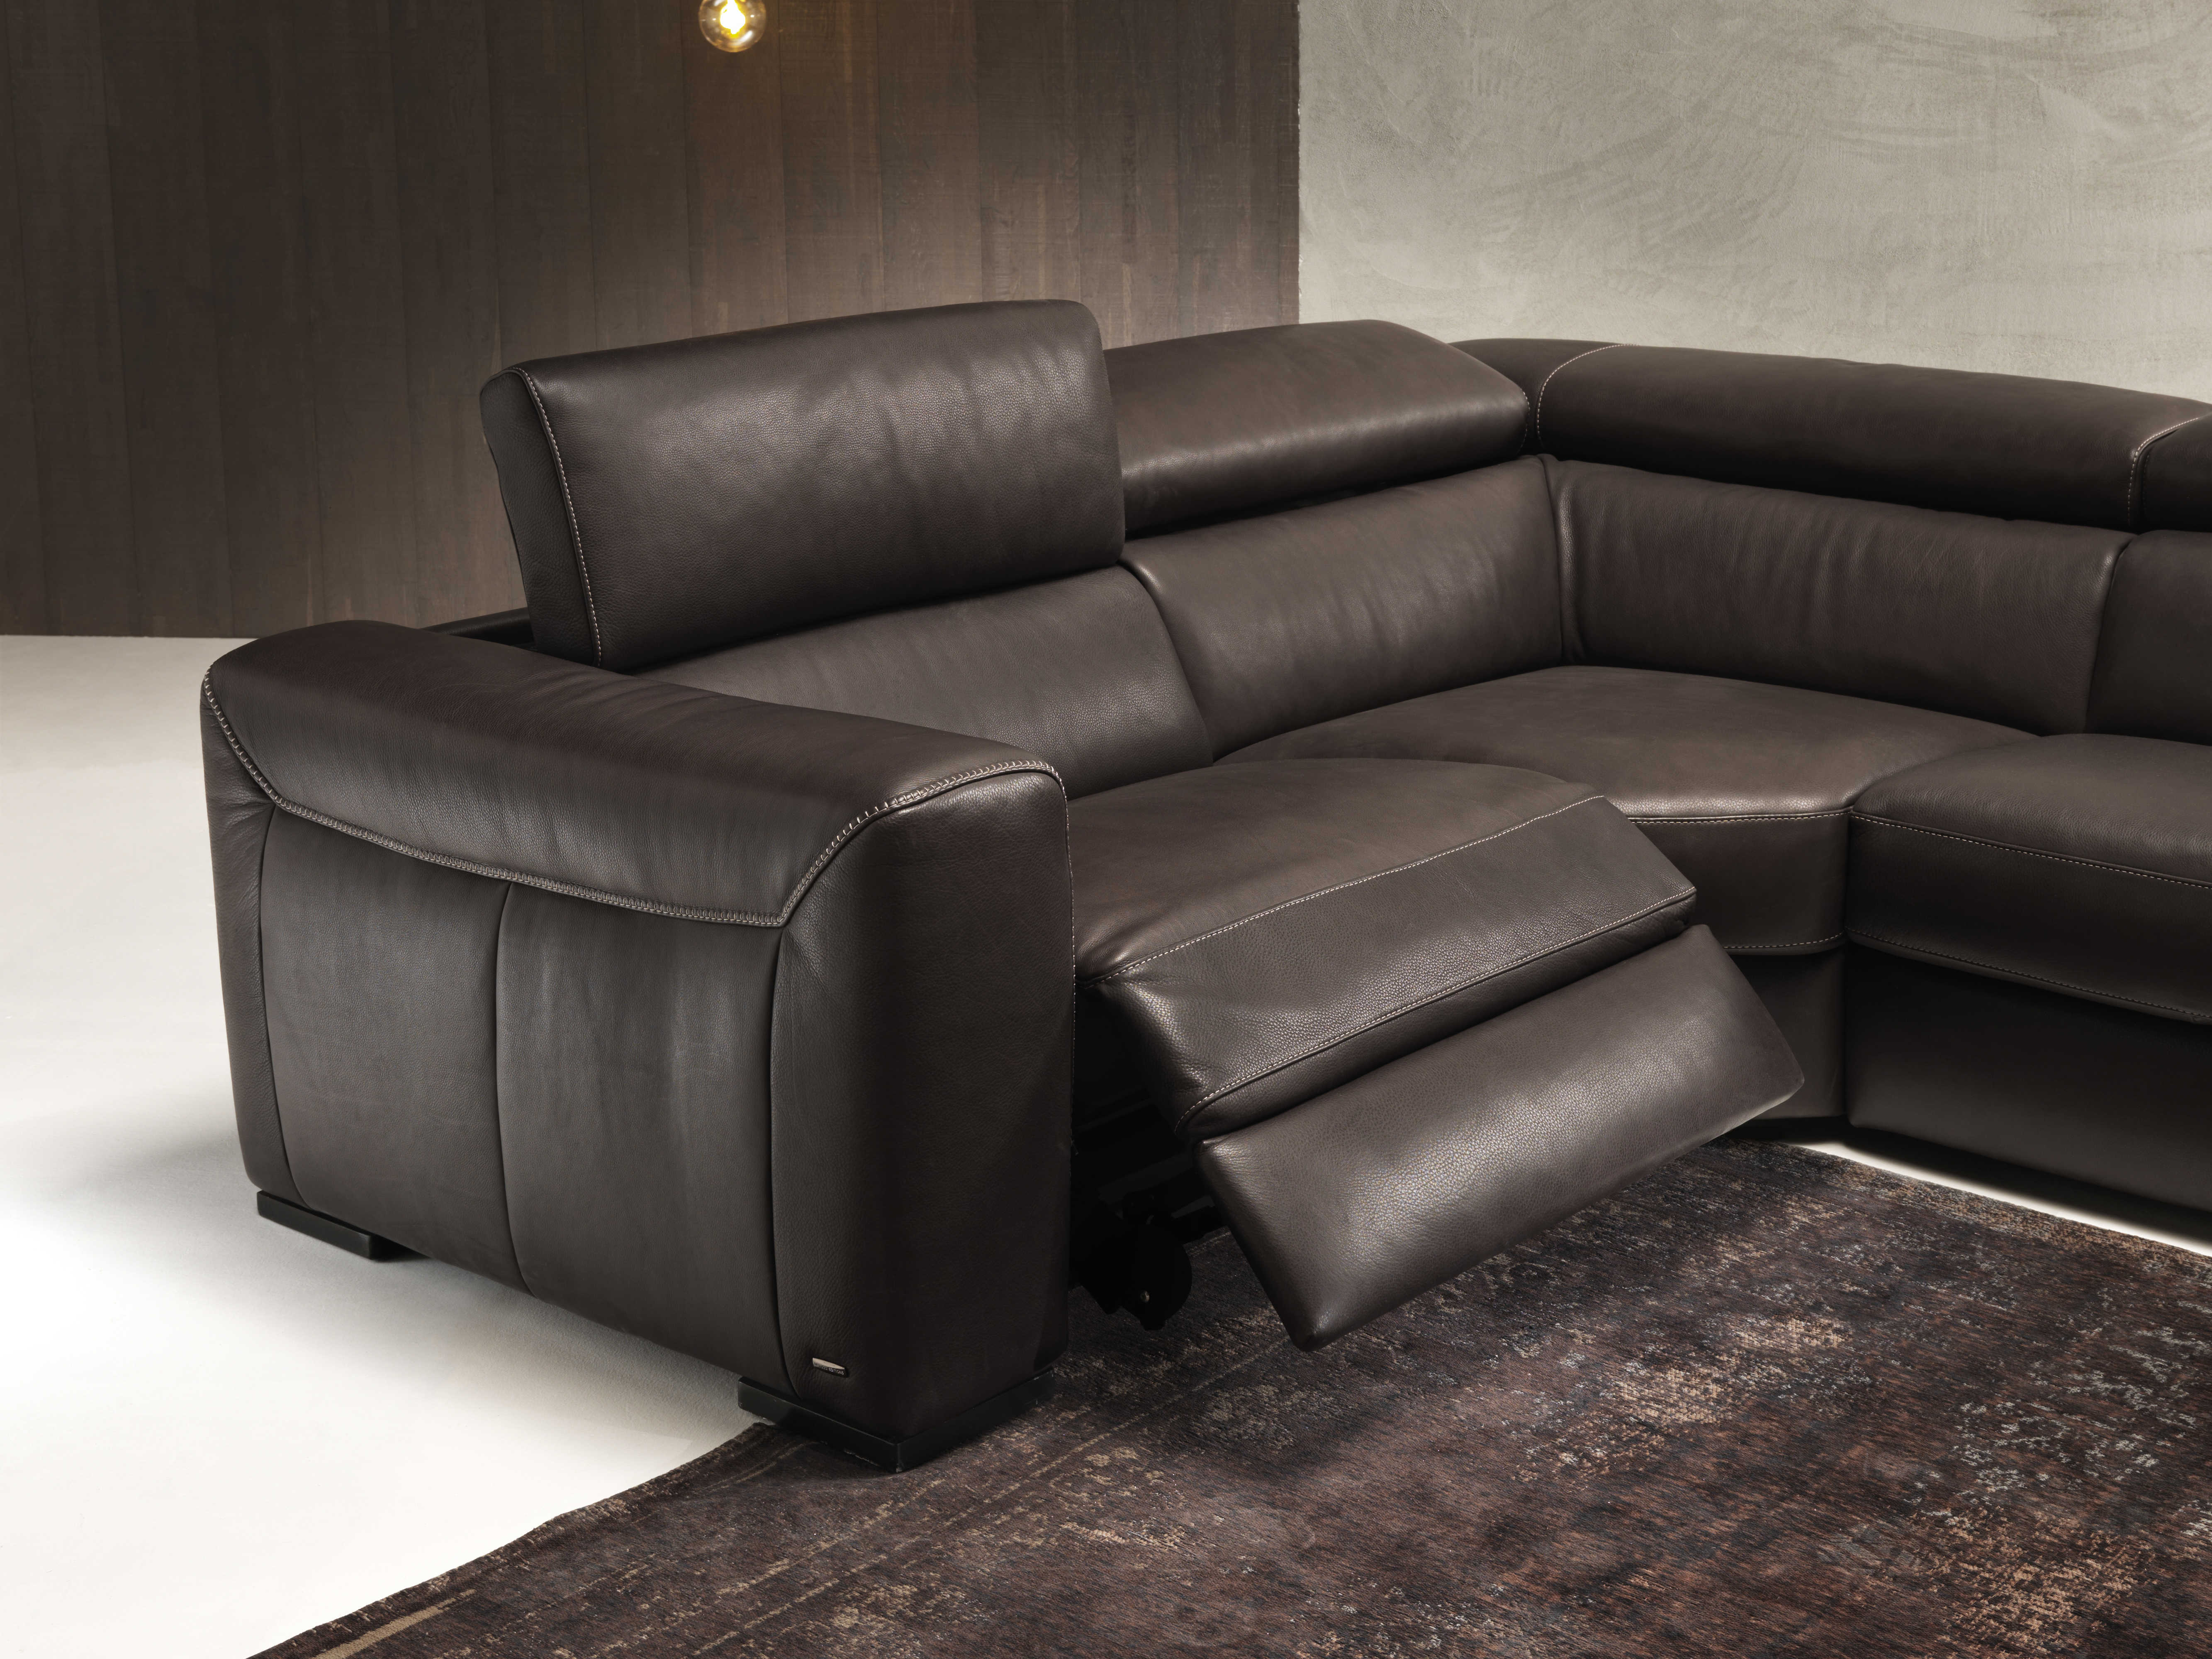 natuzzi leather sectional sofa canada